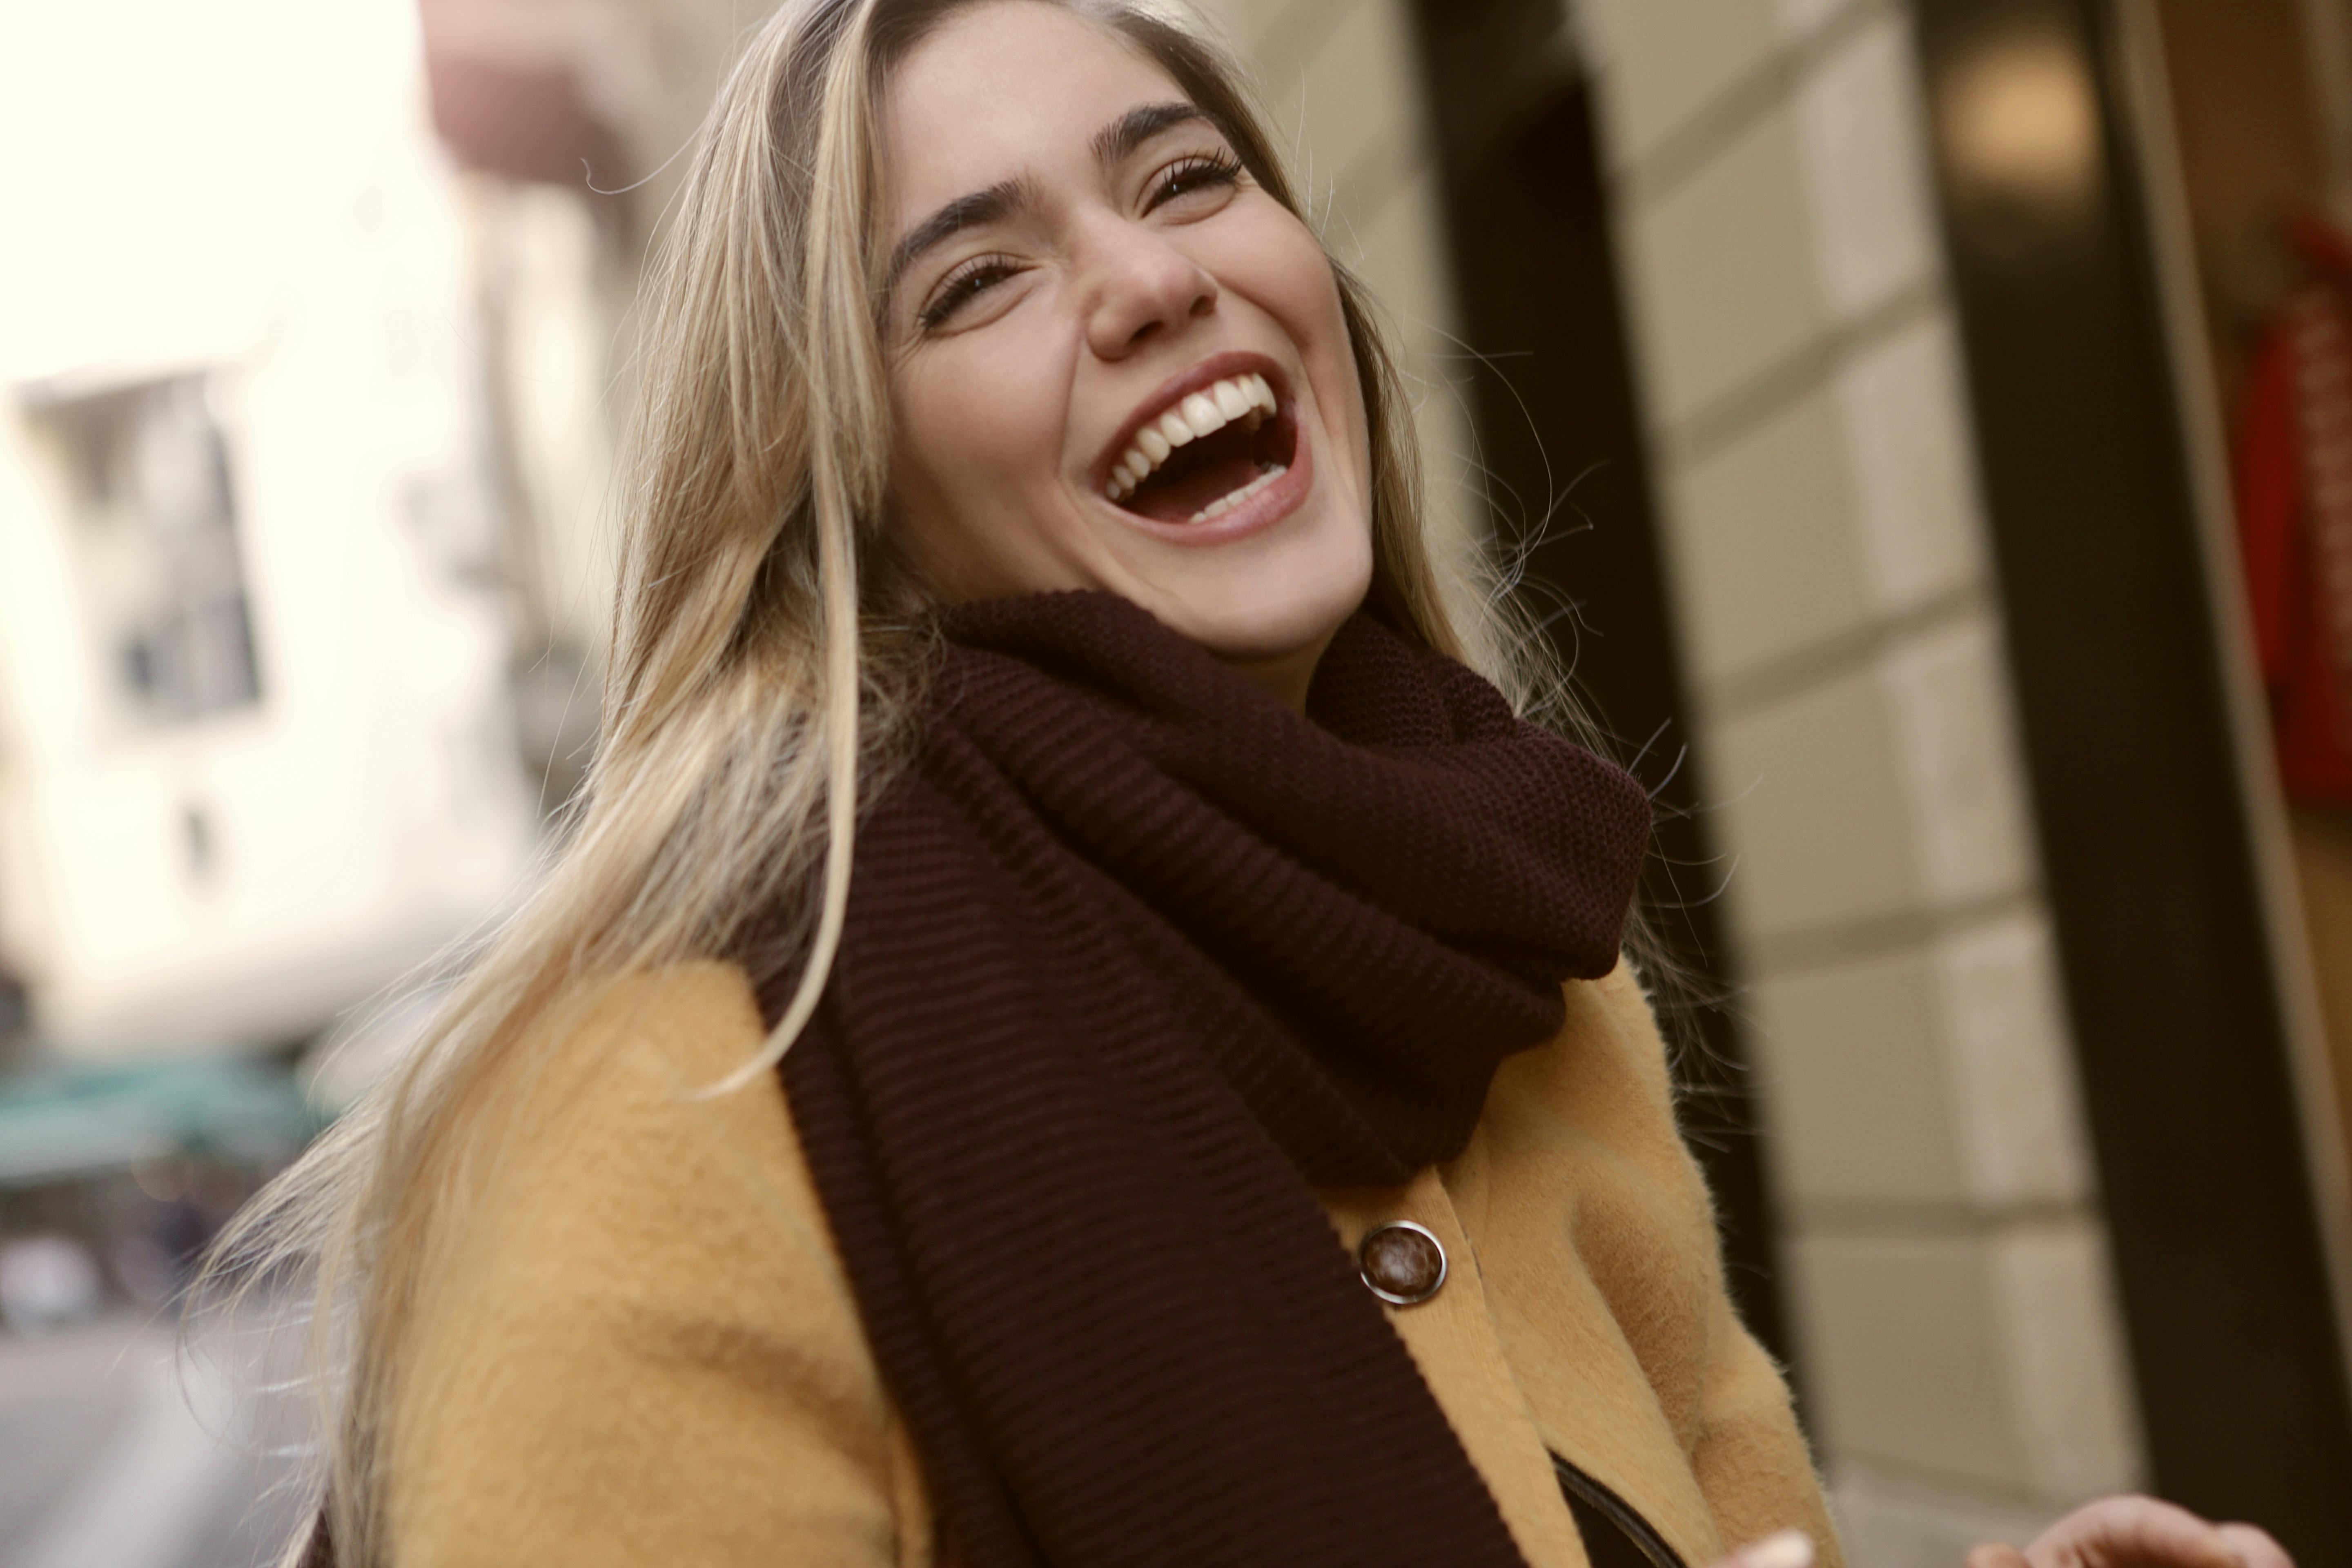 A happy woman | Source: Pexels